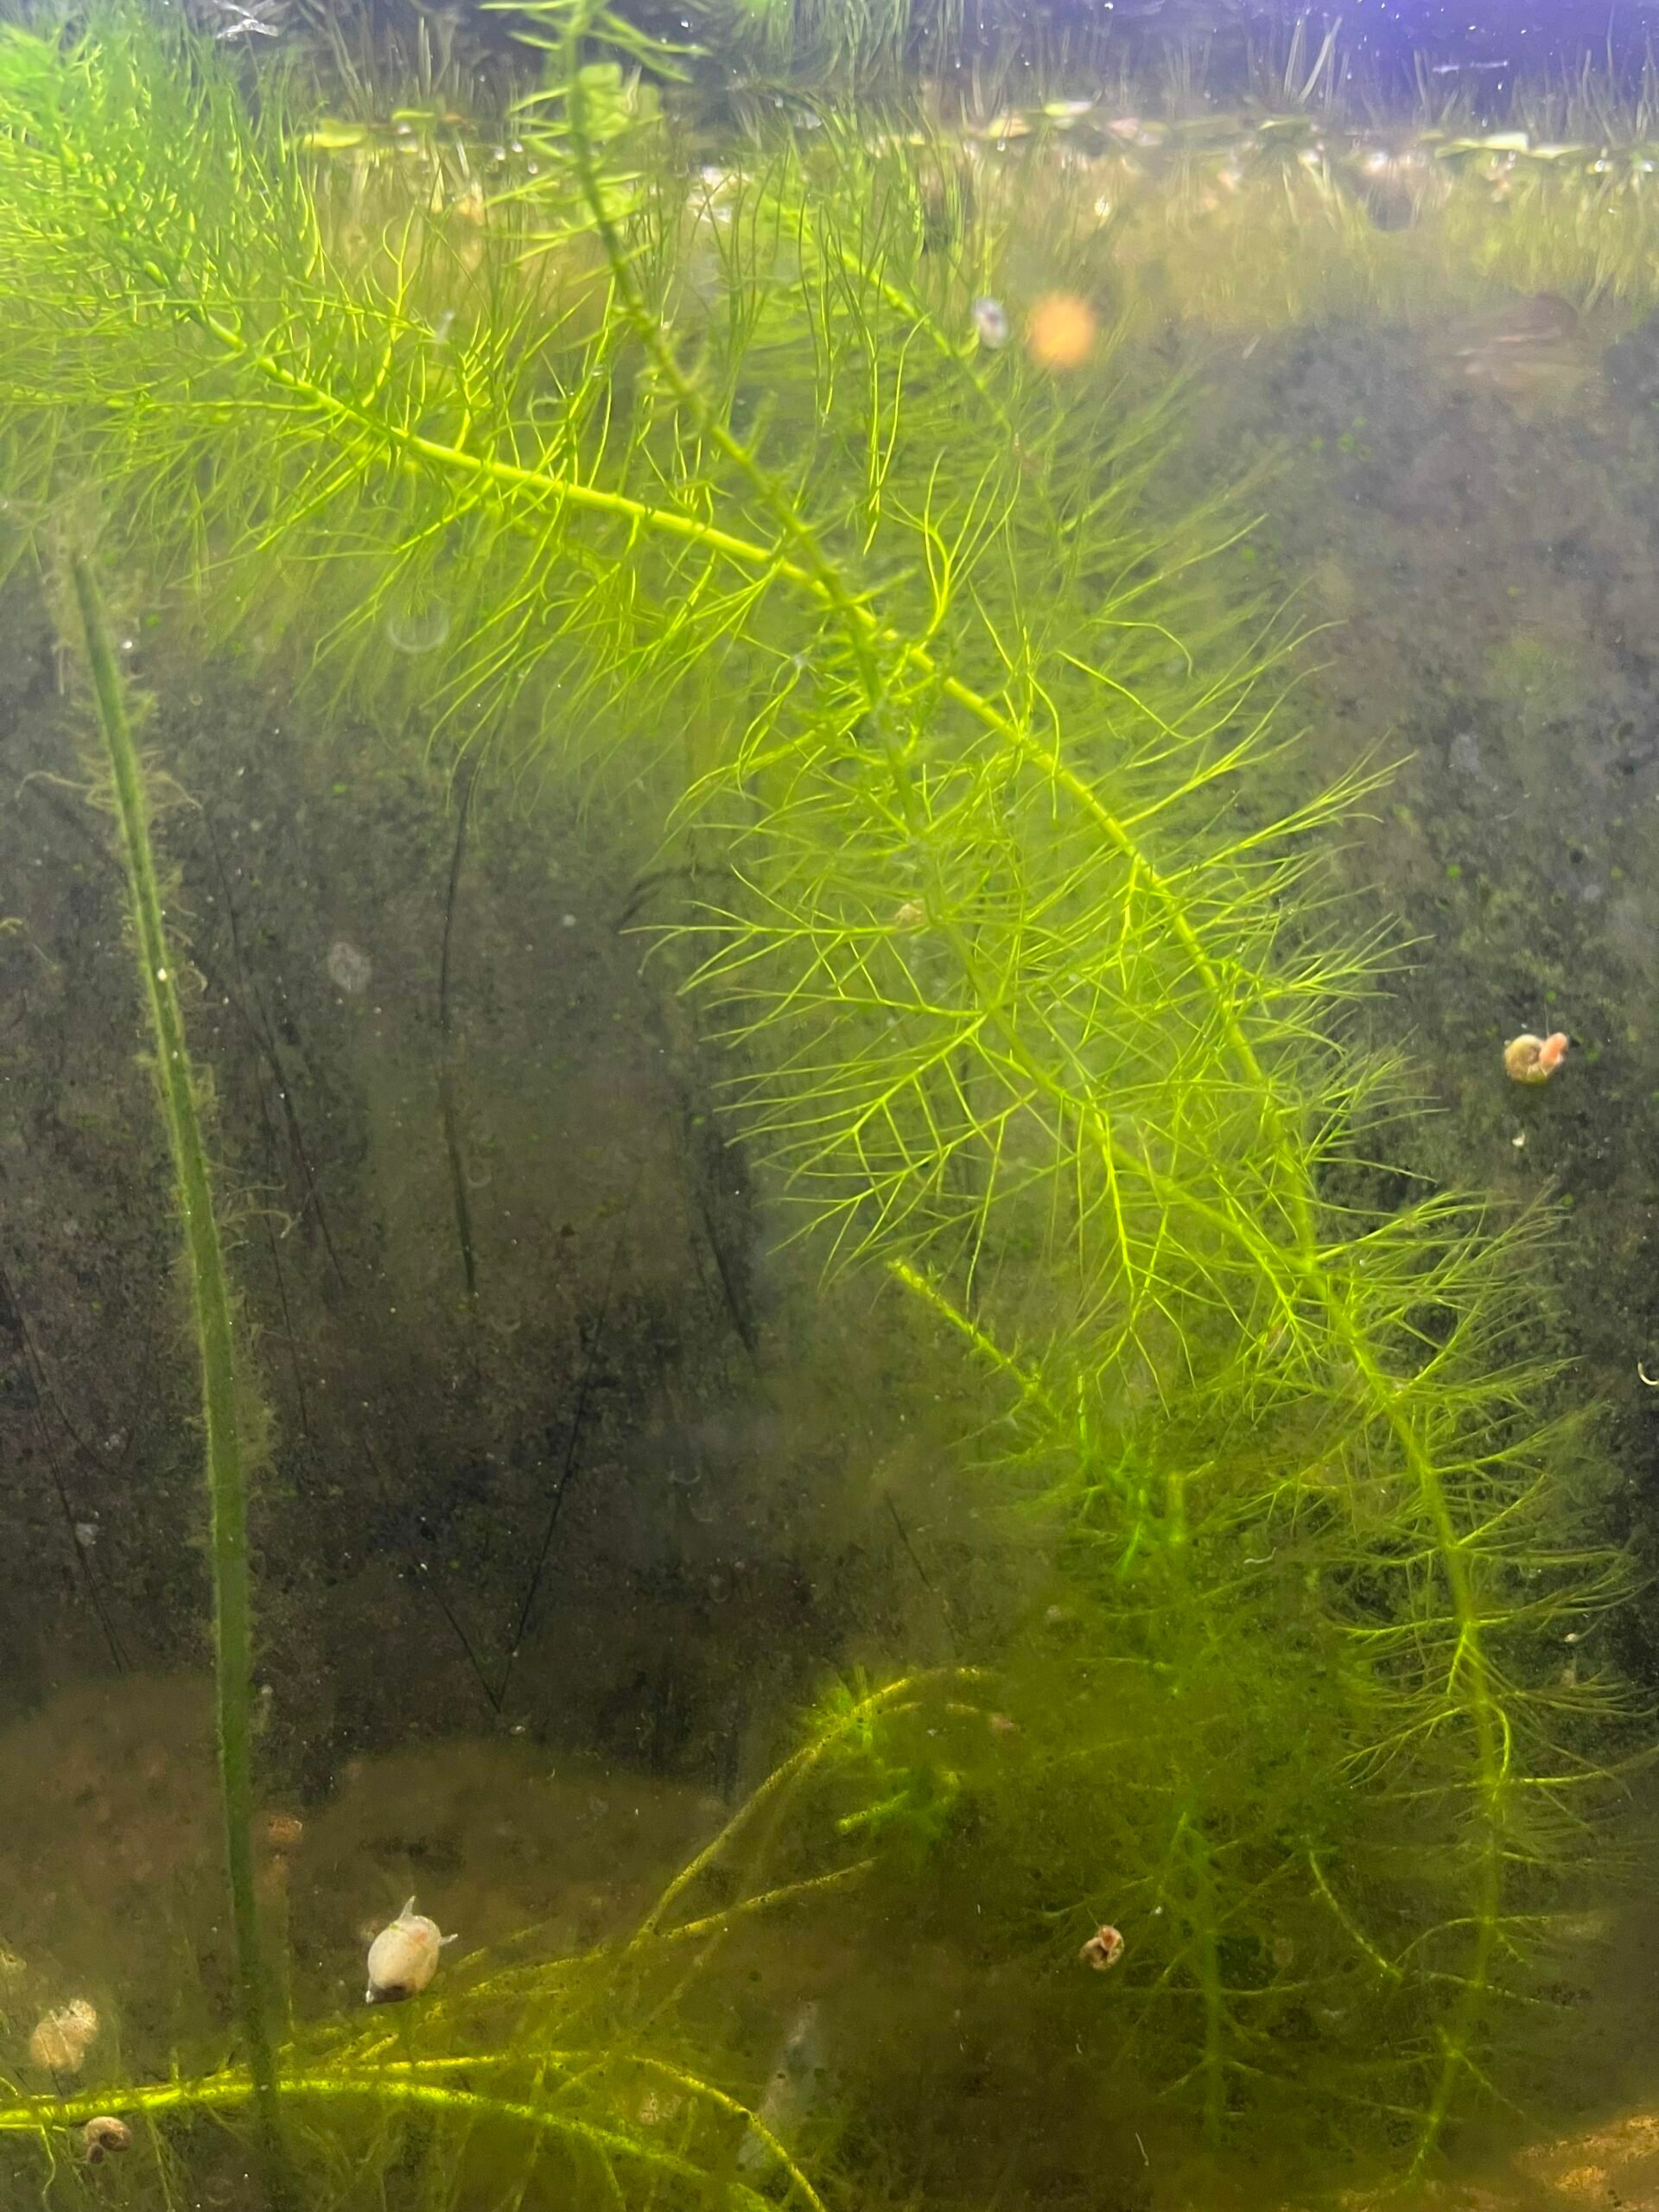 Hornwort in an aquarium